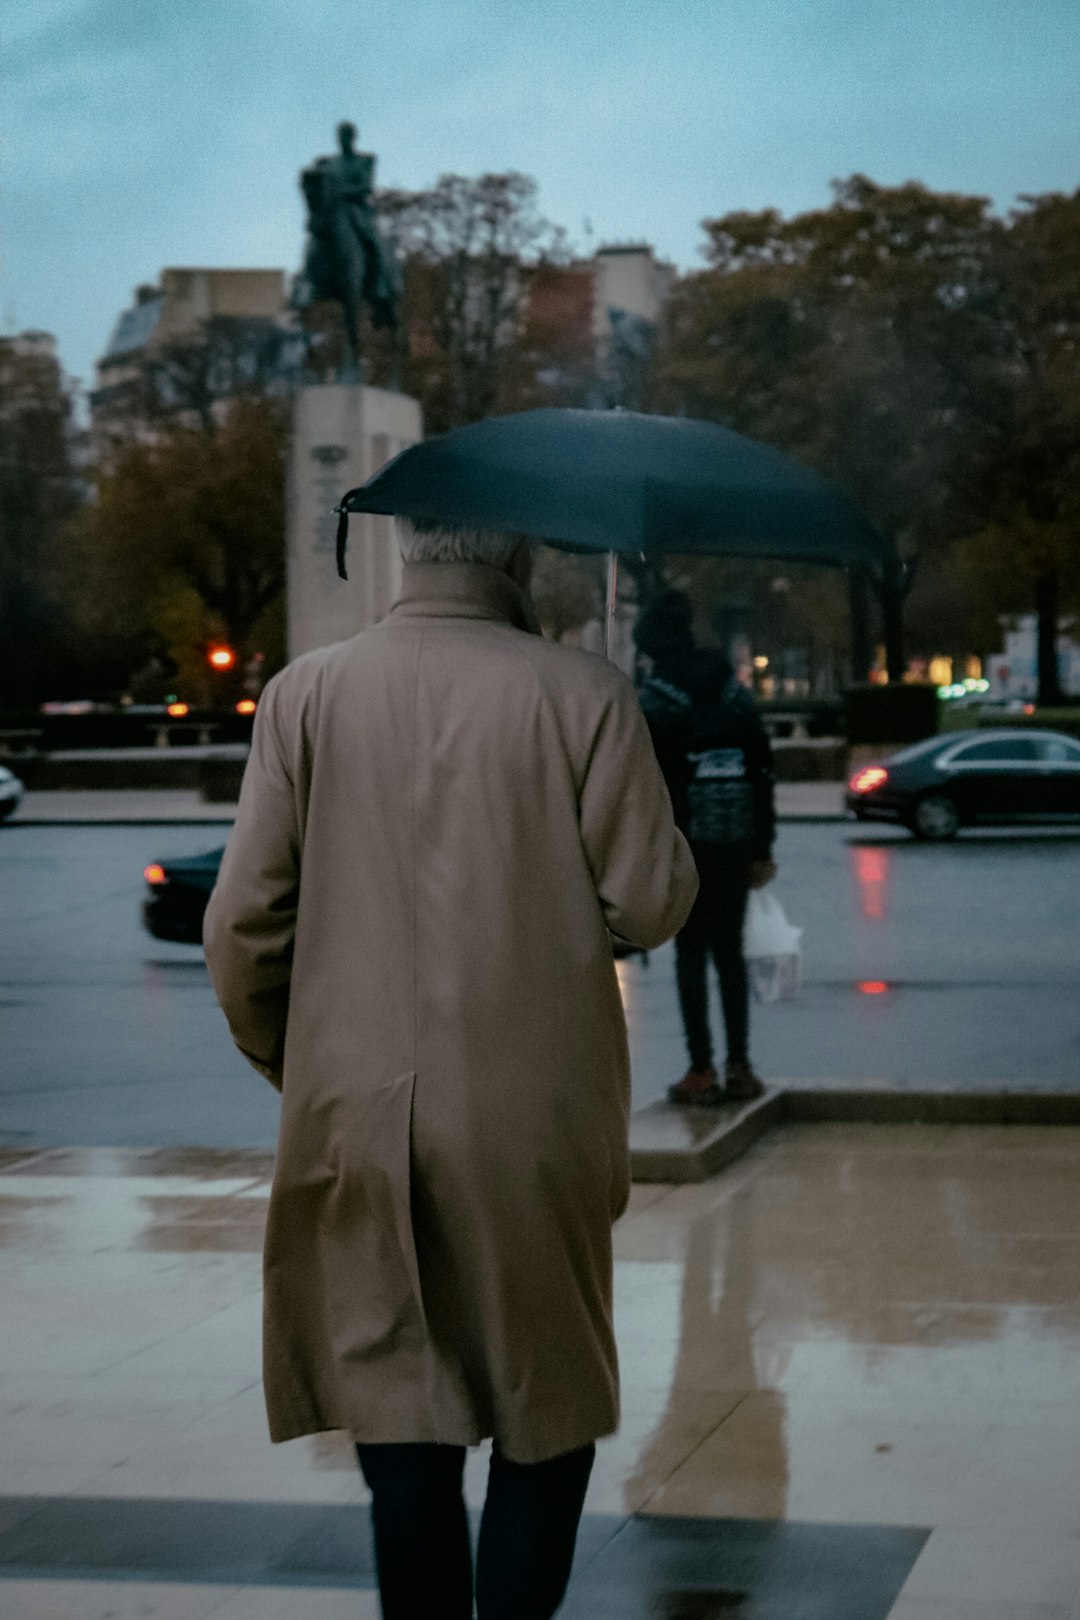 man in brown coat holding umbrella walking on sidewalk during daytime